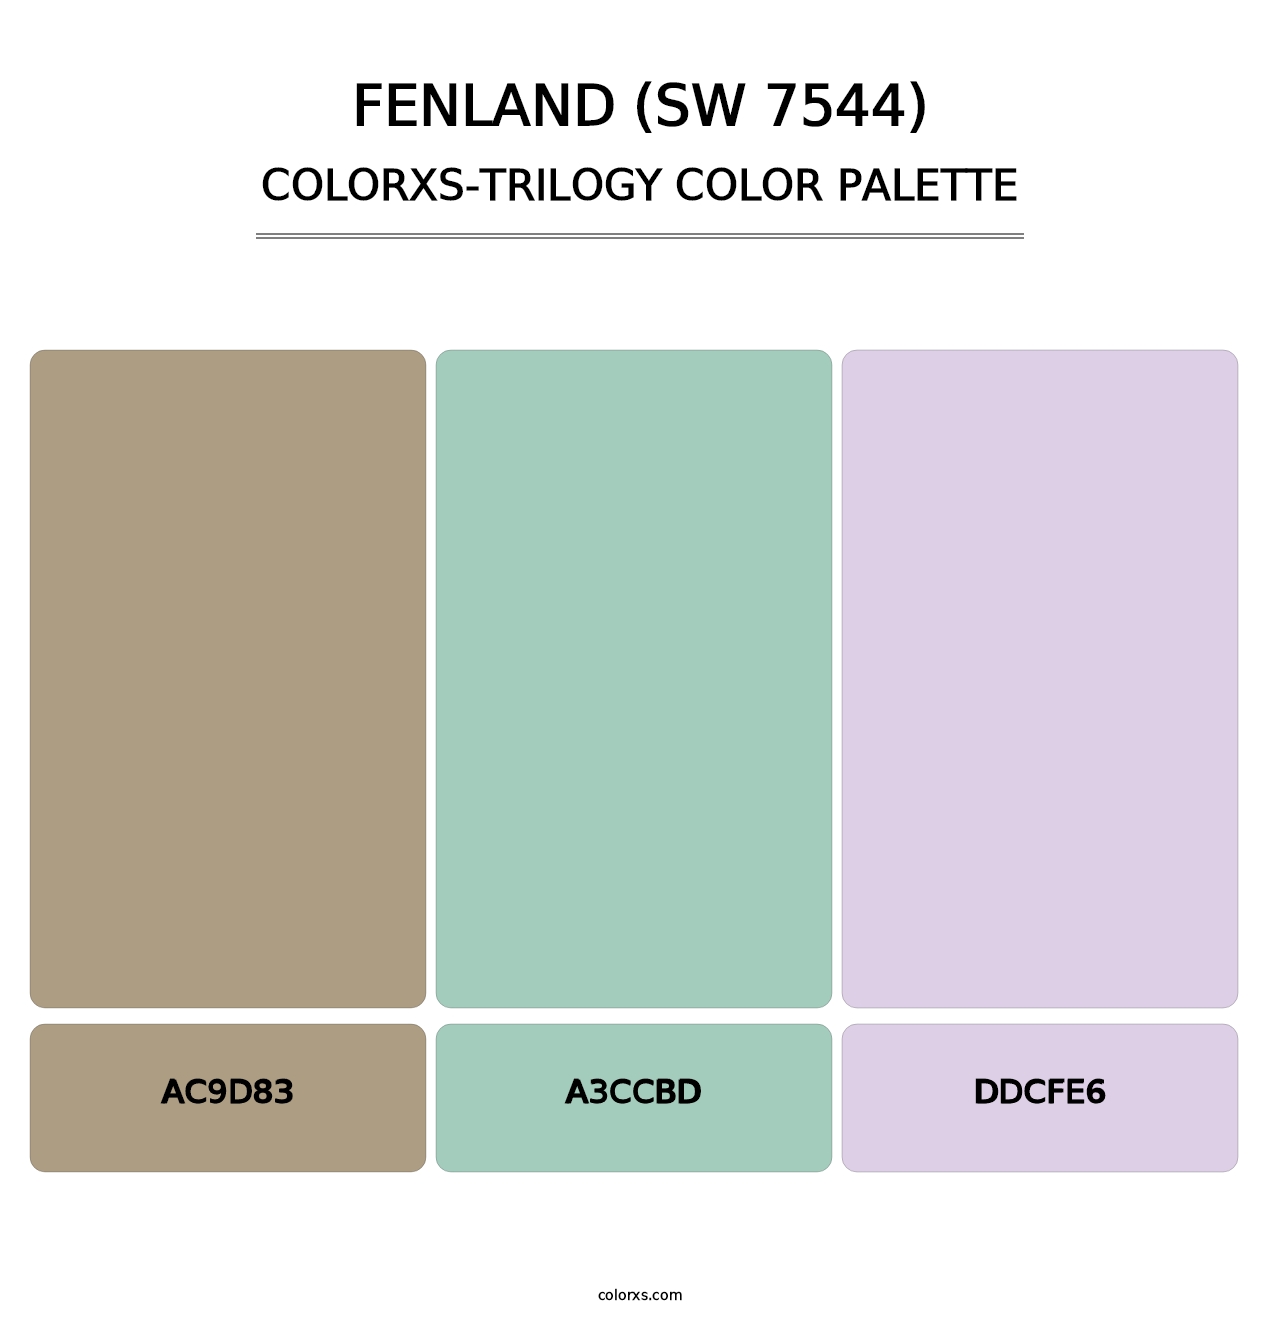 Fenland (SW 7544) - Colorxs Trilogy Palette